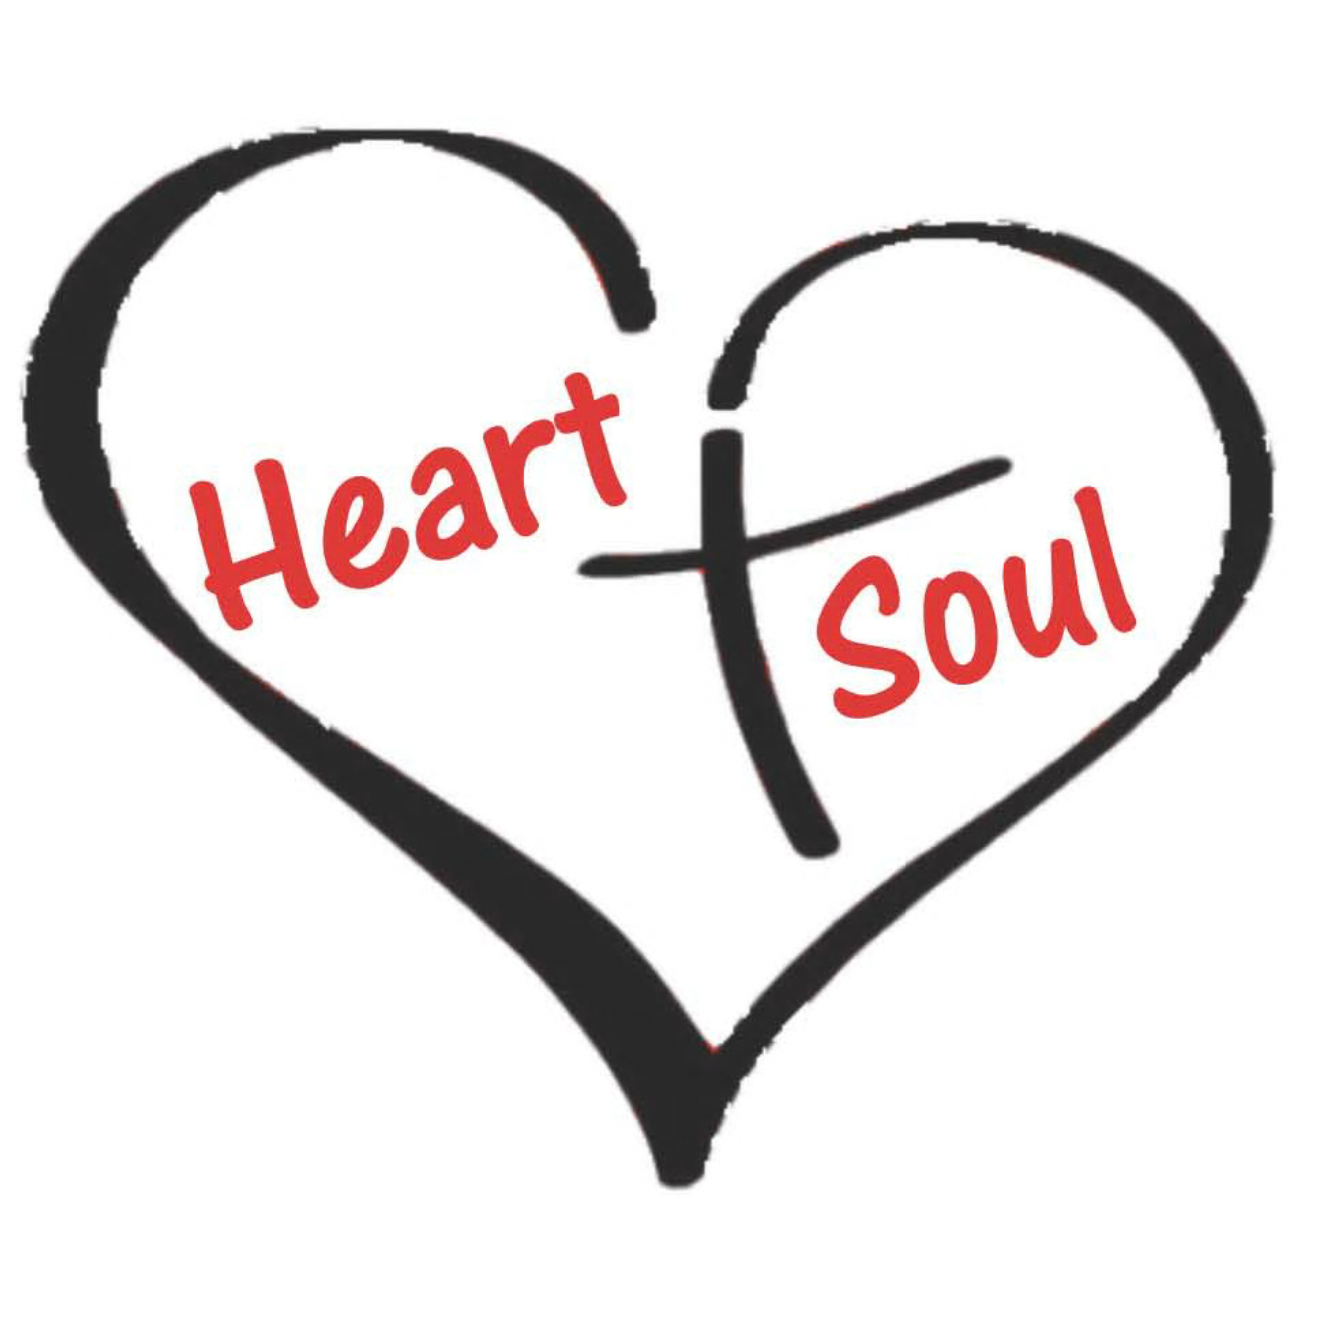 Heart & Soul | 10th July 2019